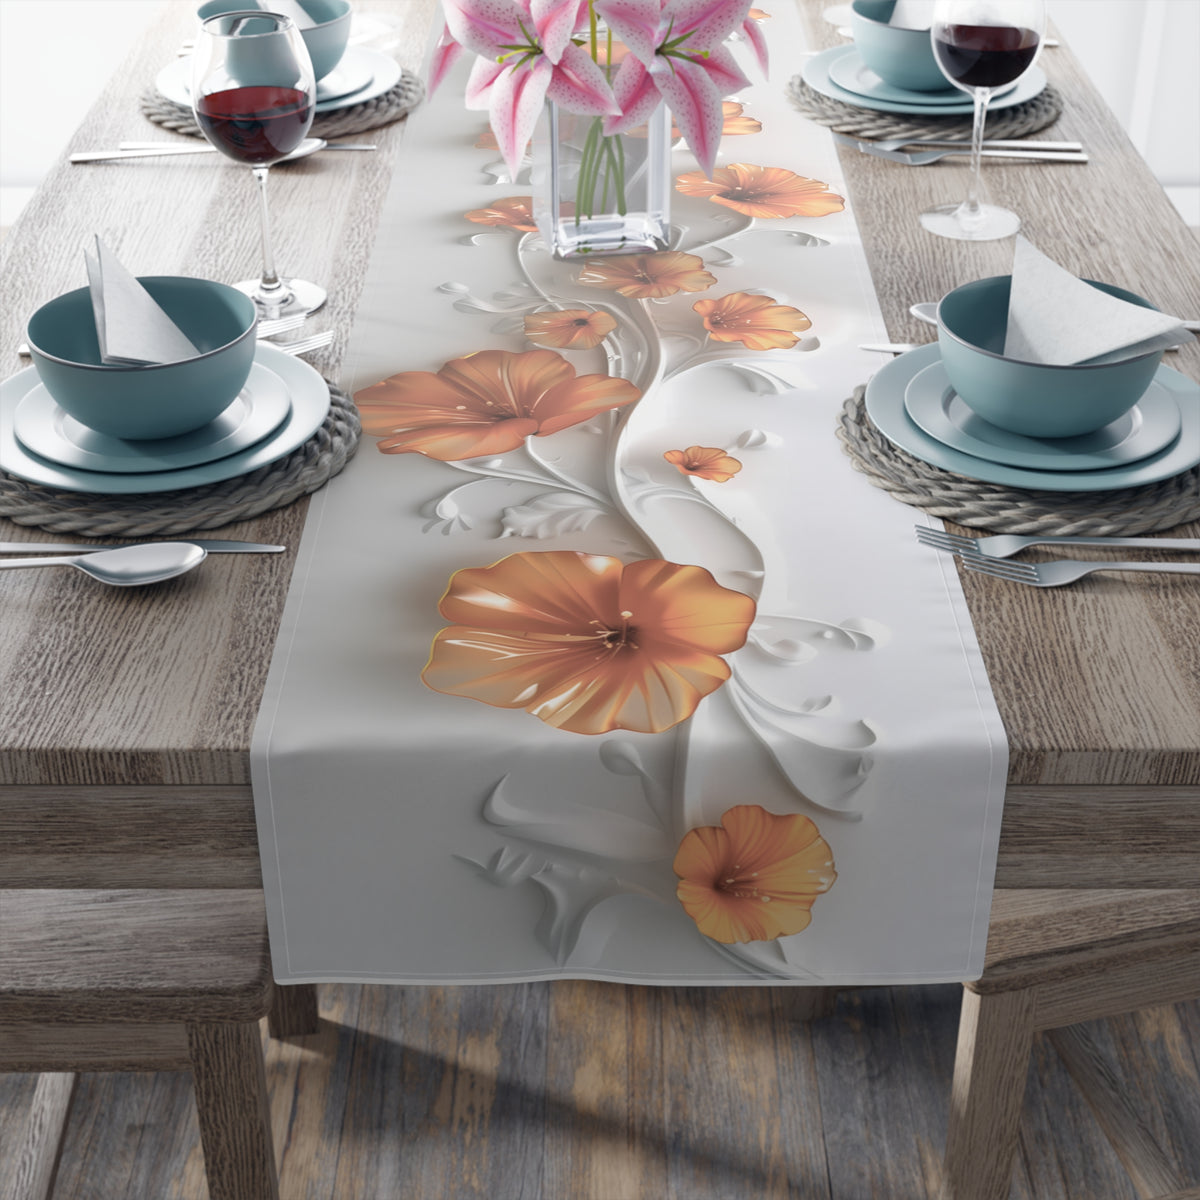 3D Table Runner with Stunning Orange Nasturtium Floral Design (16&quot; × 72&quot;)